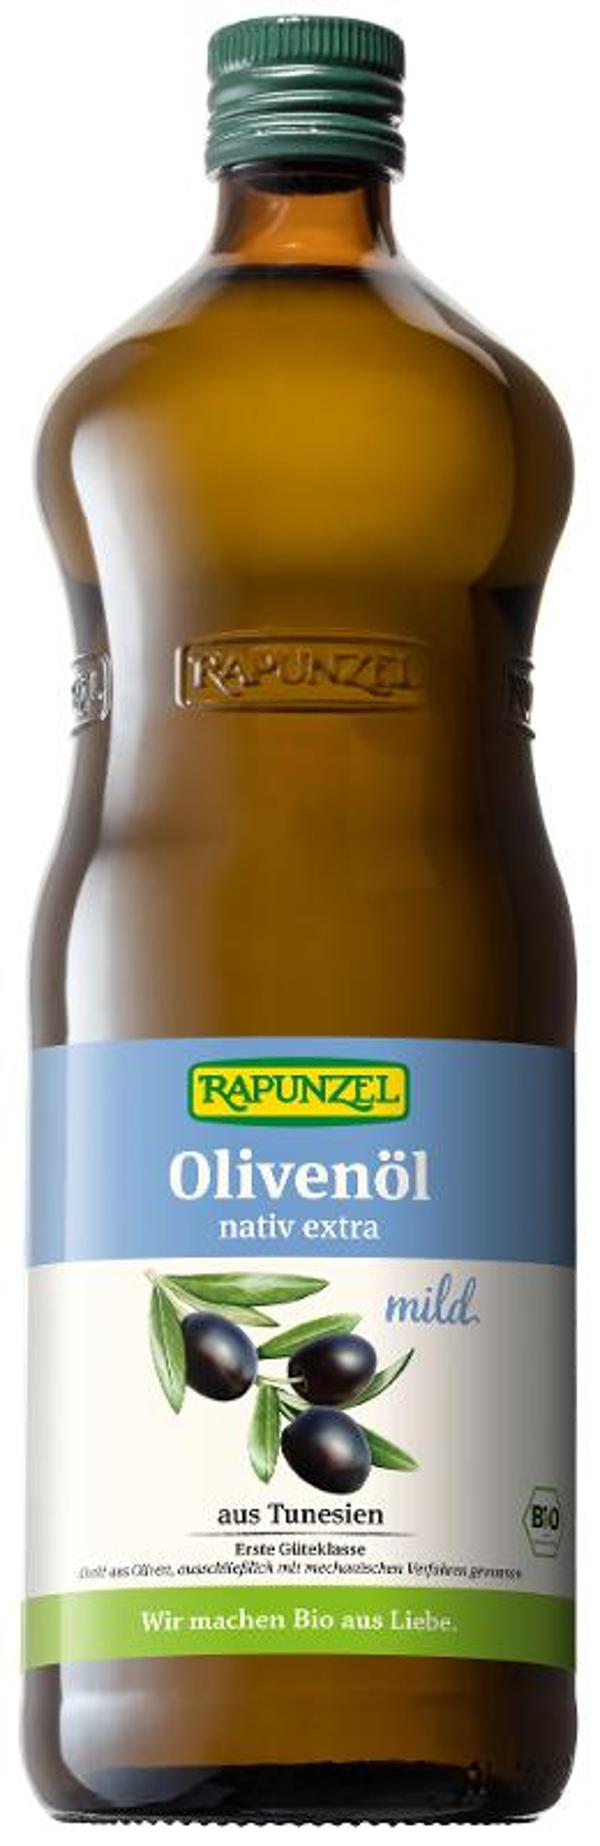 Produktfoto zu Olivenöl mild nativ extra 1 l Rapunzel